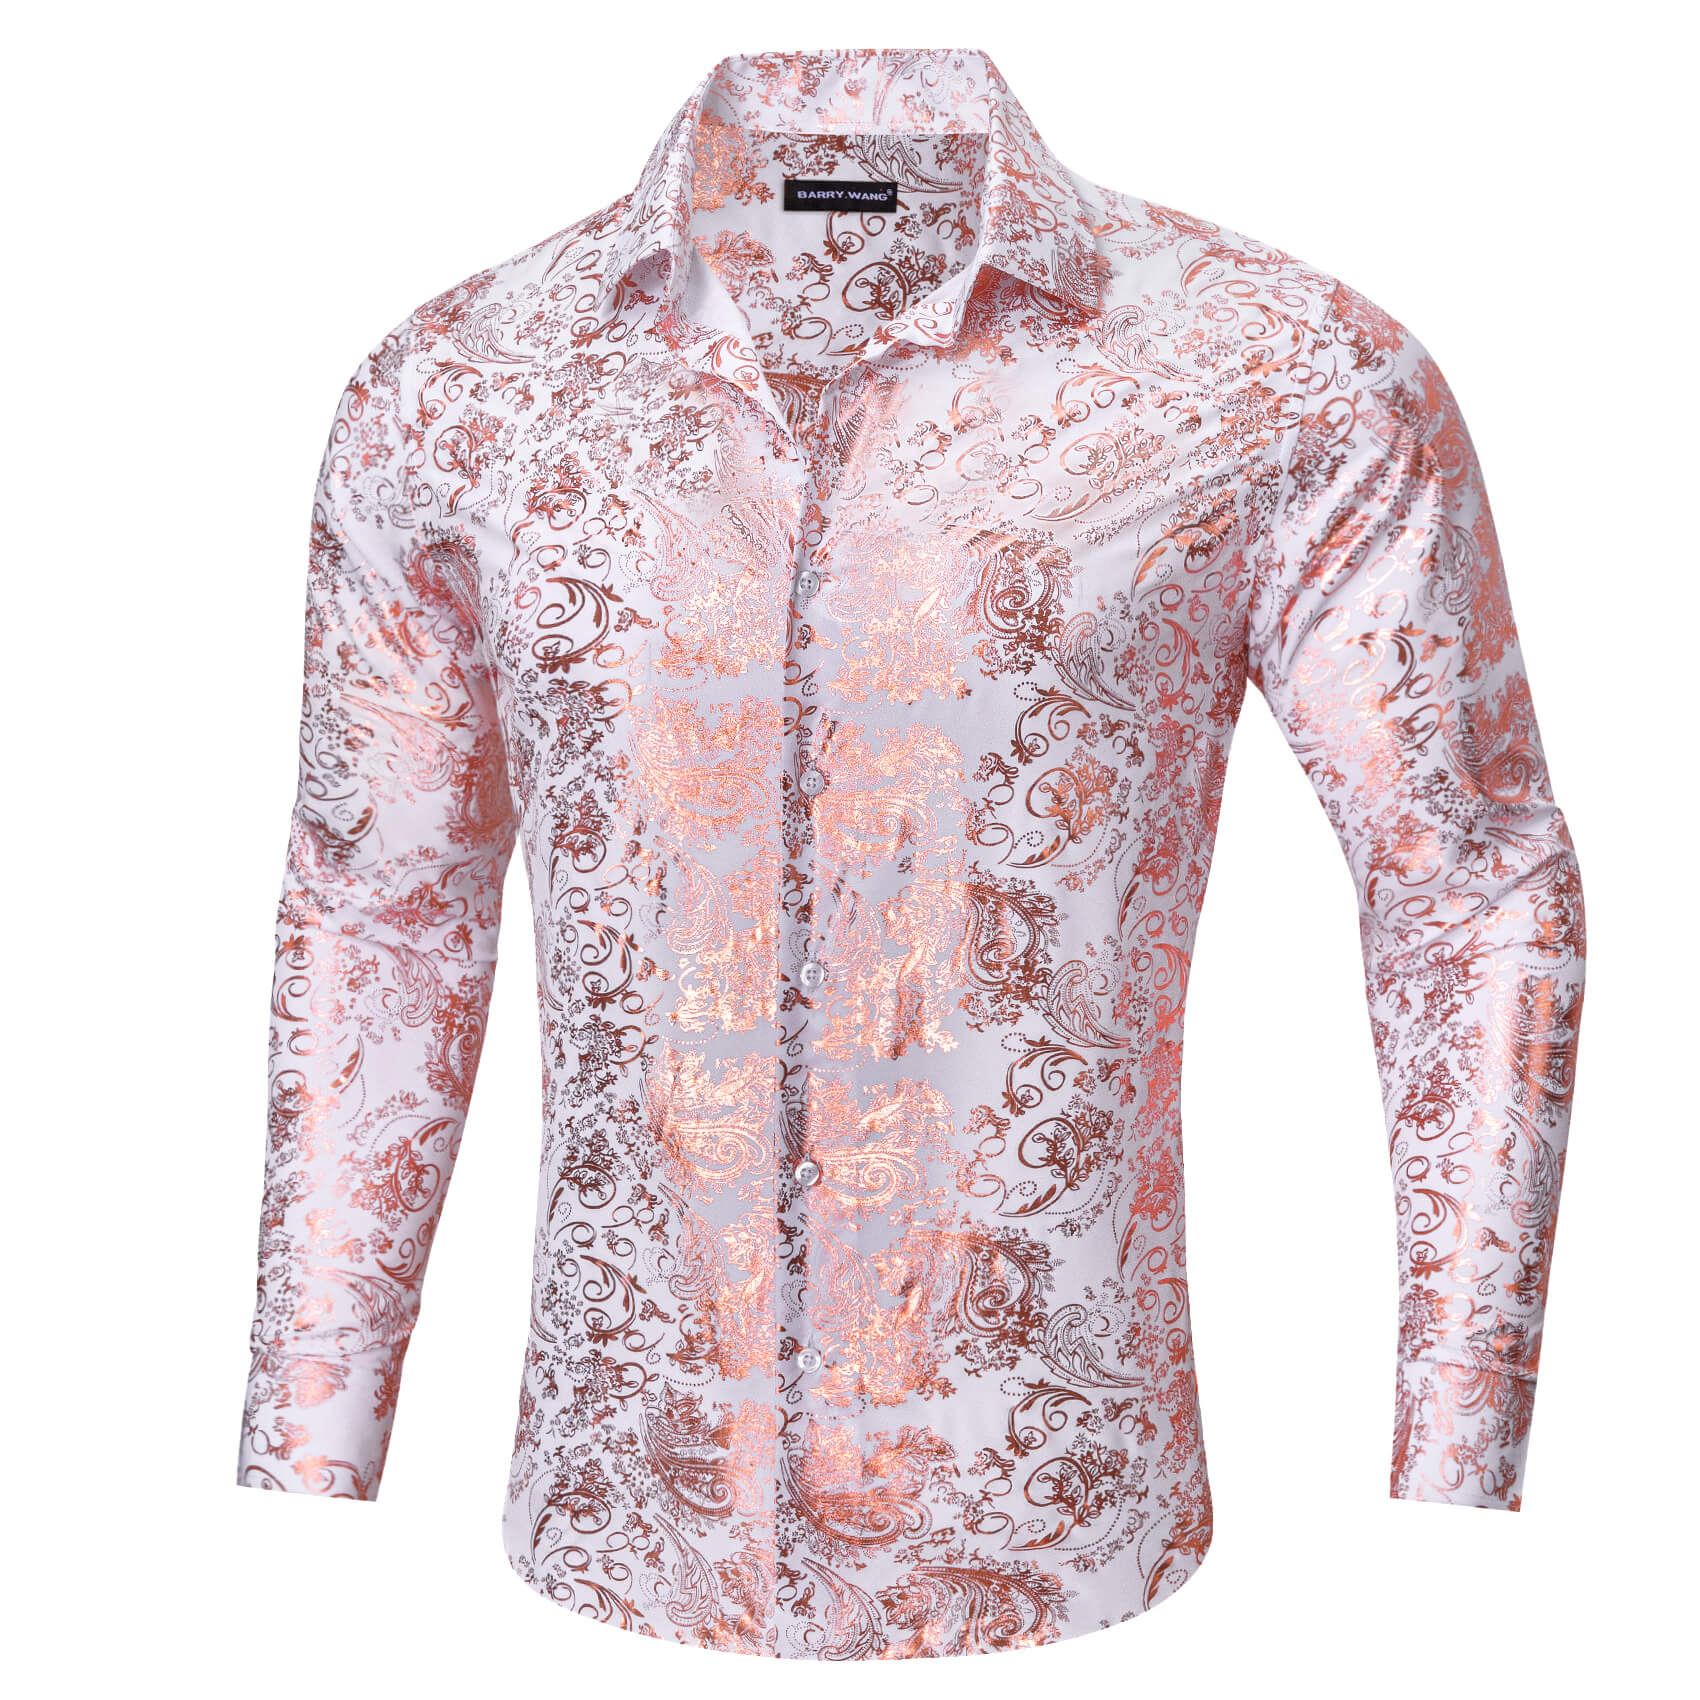 Barry.wang Bronzing Floral Shirt Silk Rose Golden Jacquard Men's Long Sleeve Shirt